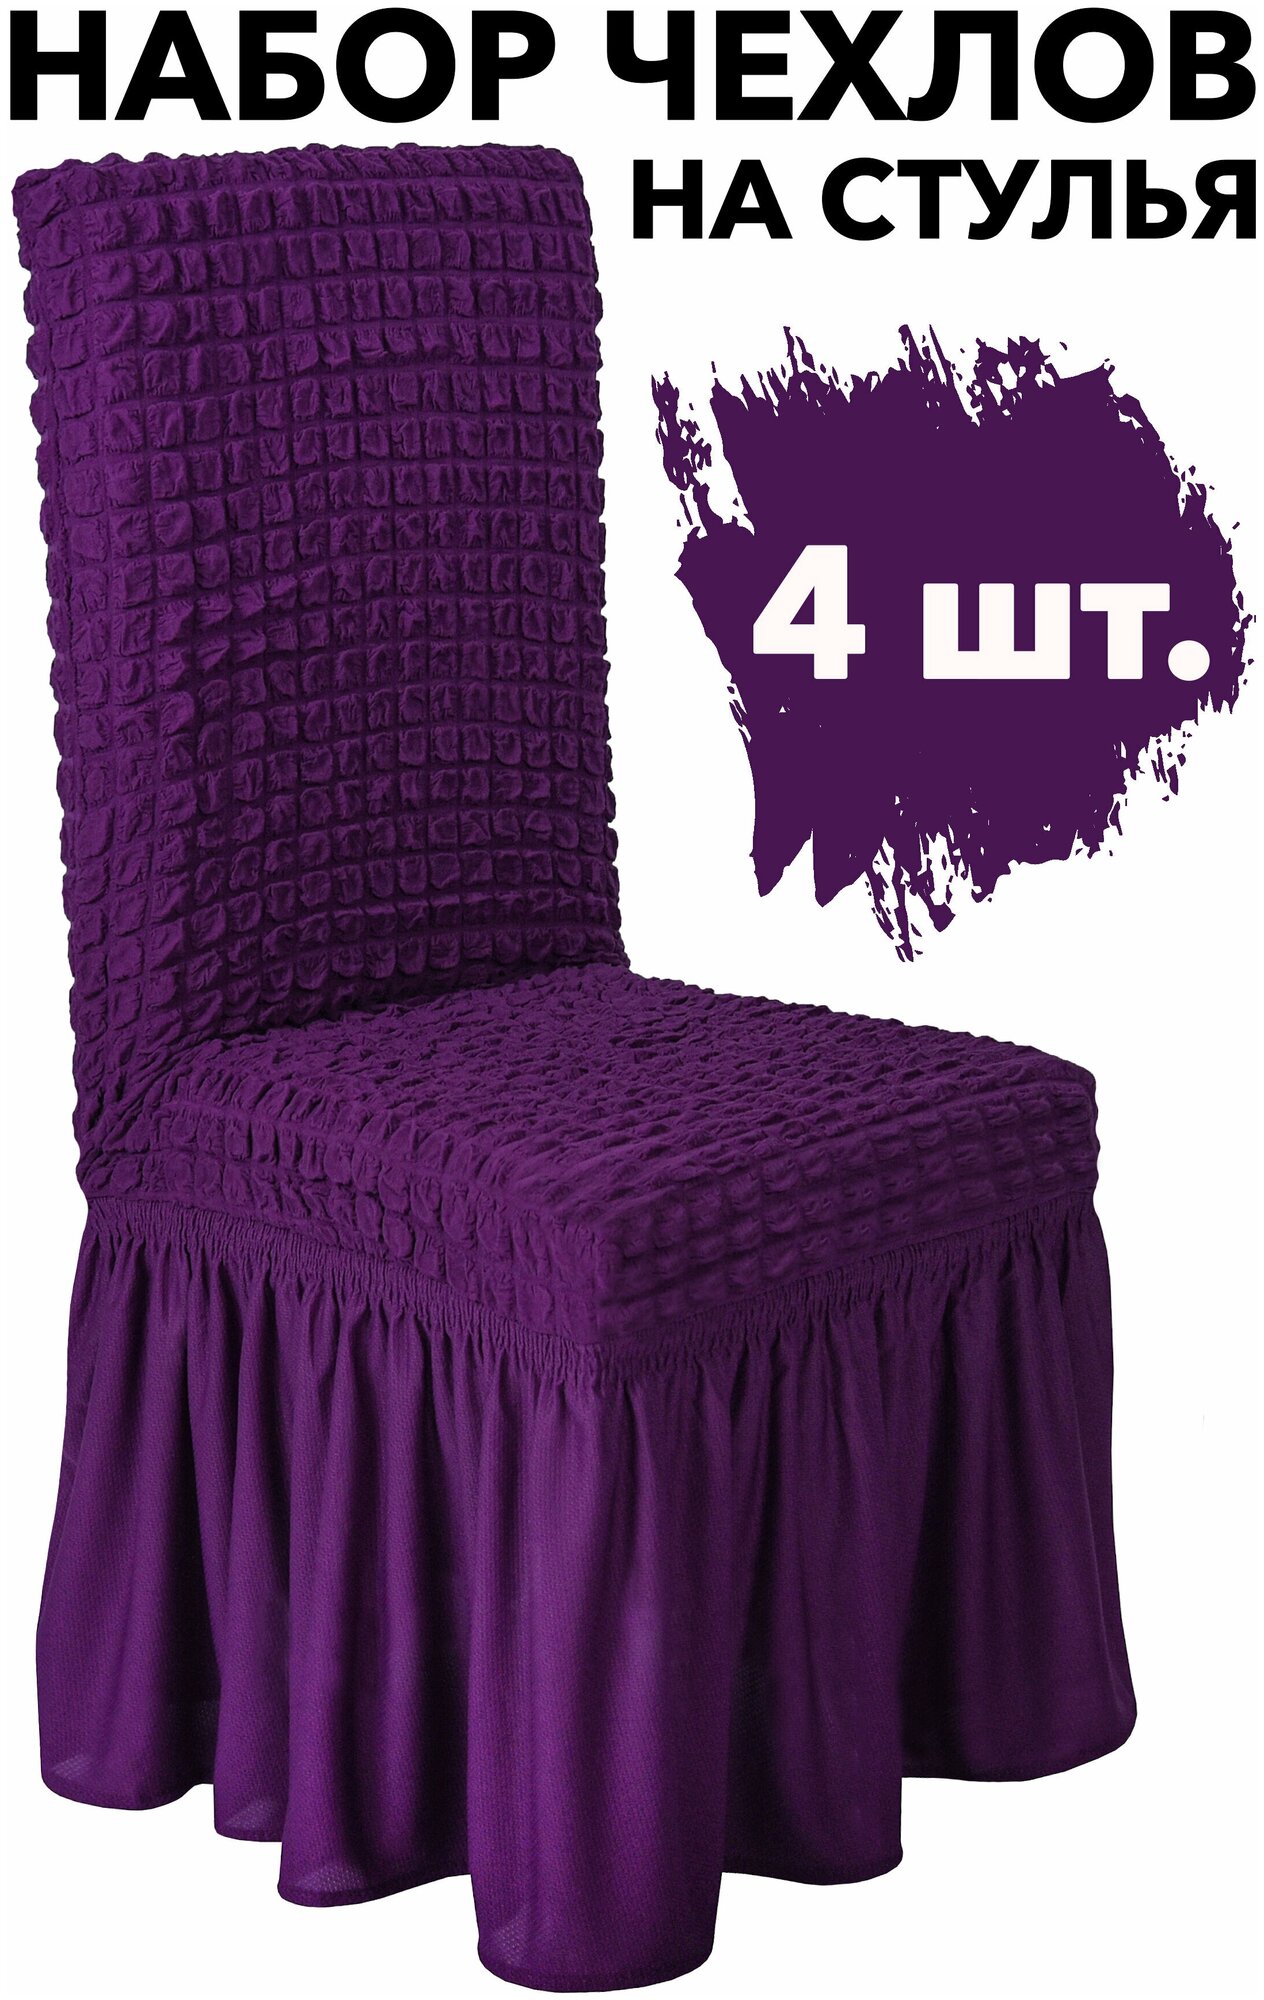 Чехол на стул со спинкой 4 шт набор универсальный на кухню однотонный Venera, цвет Фиолетовый